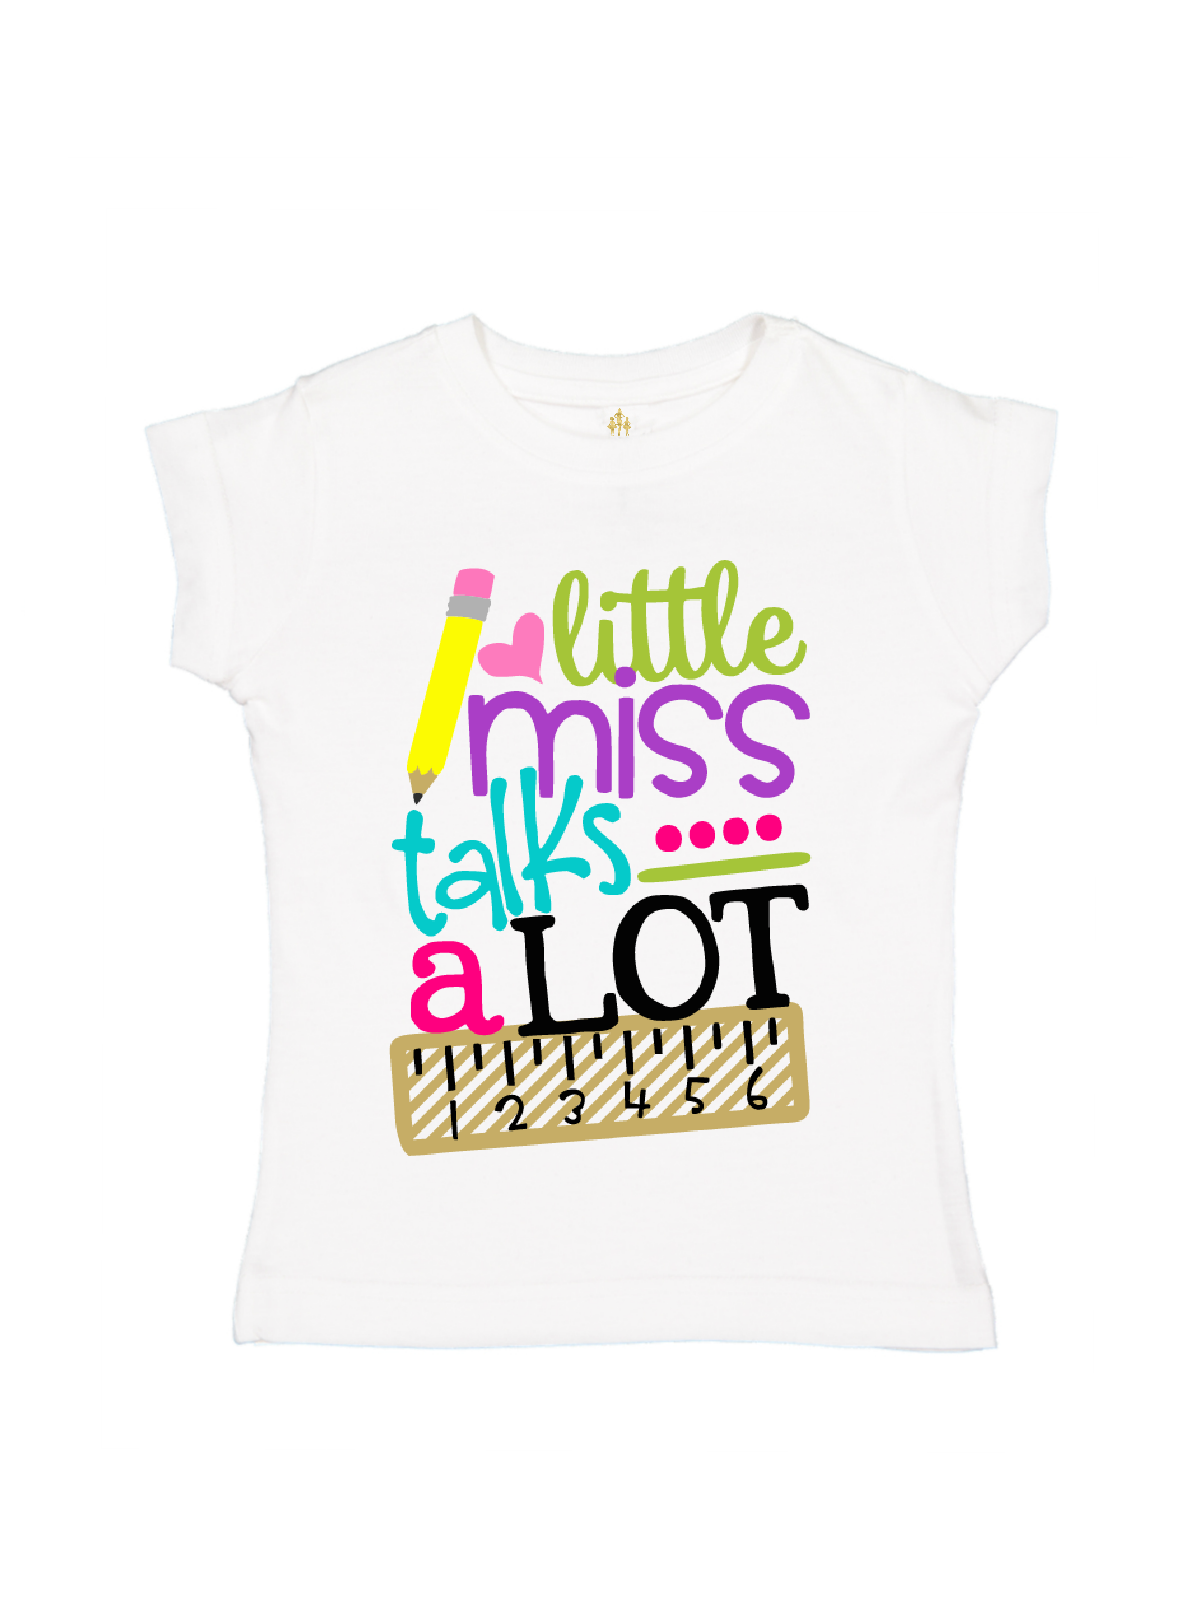 little miss talks a lot girls shirt